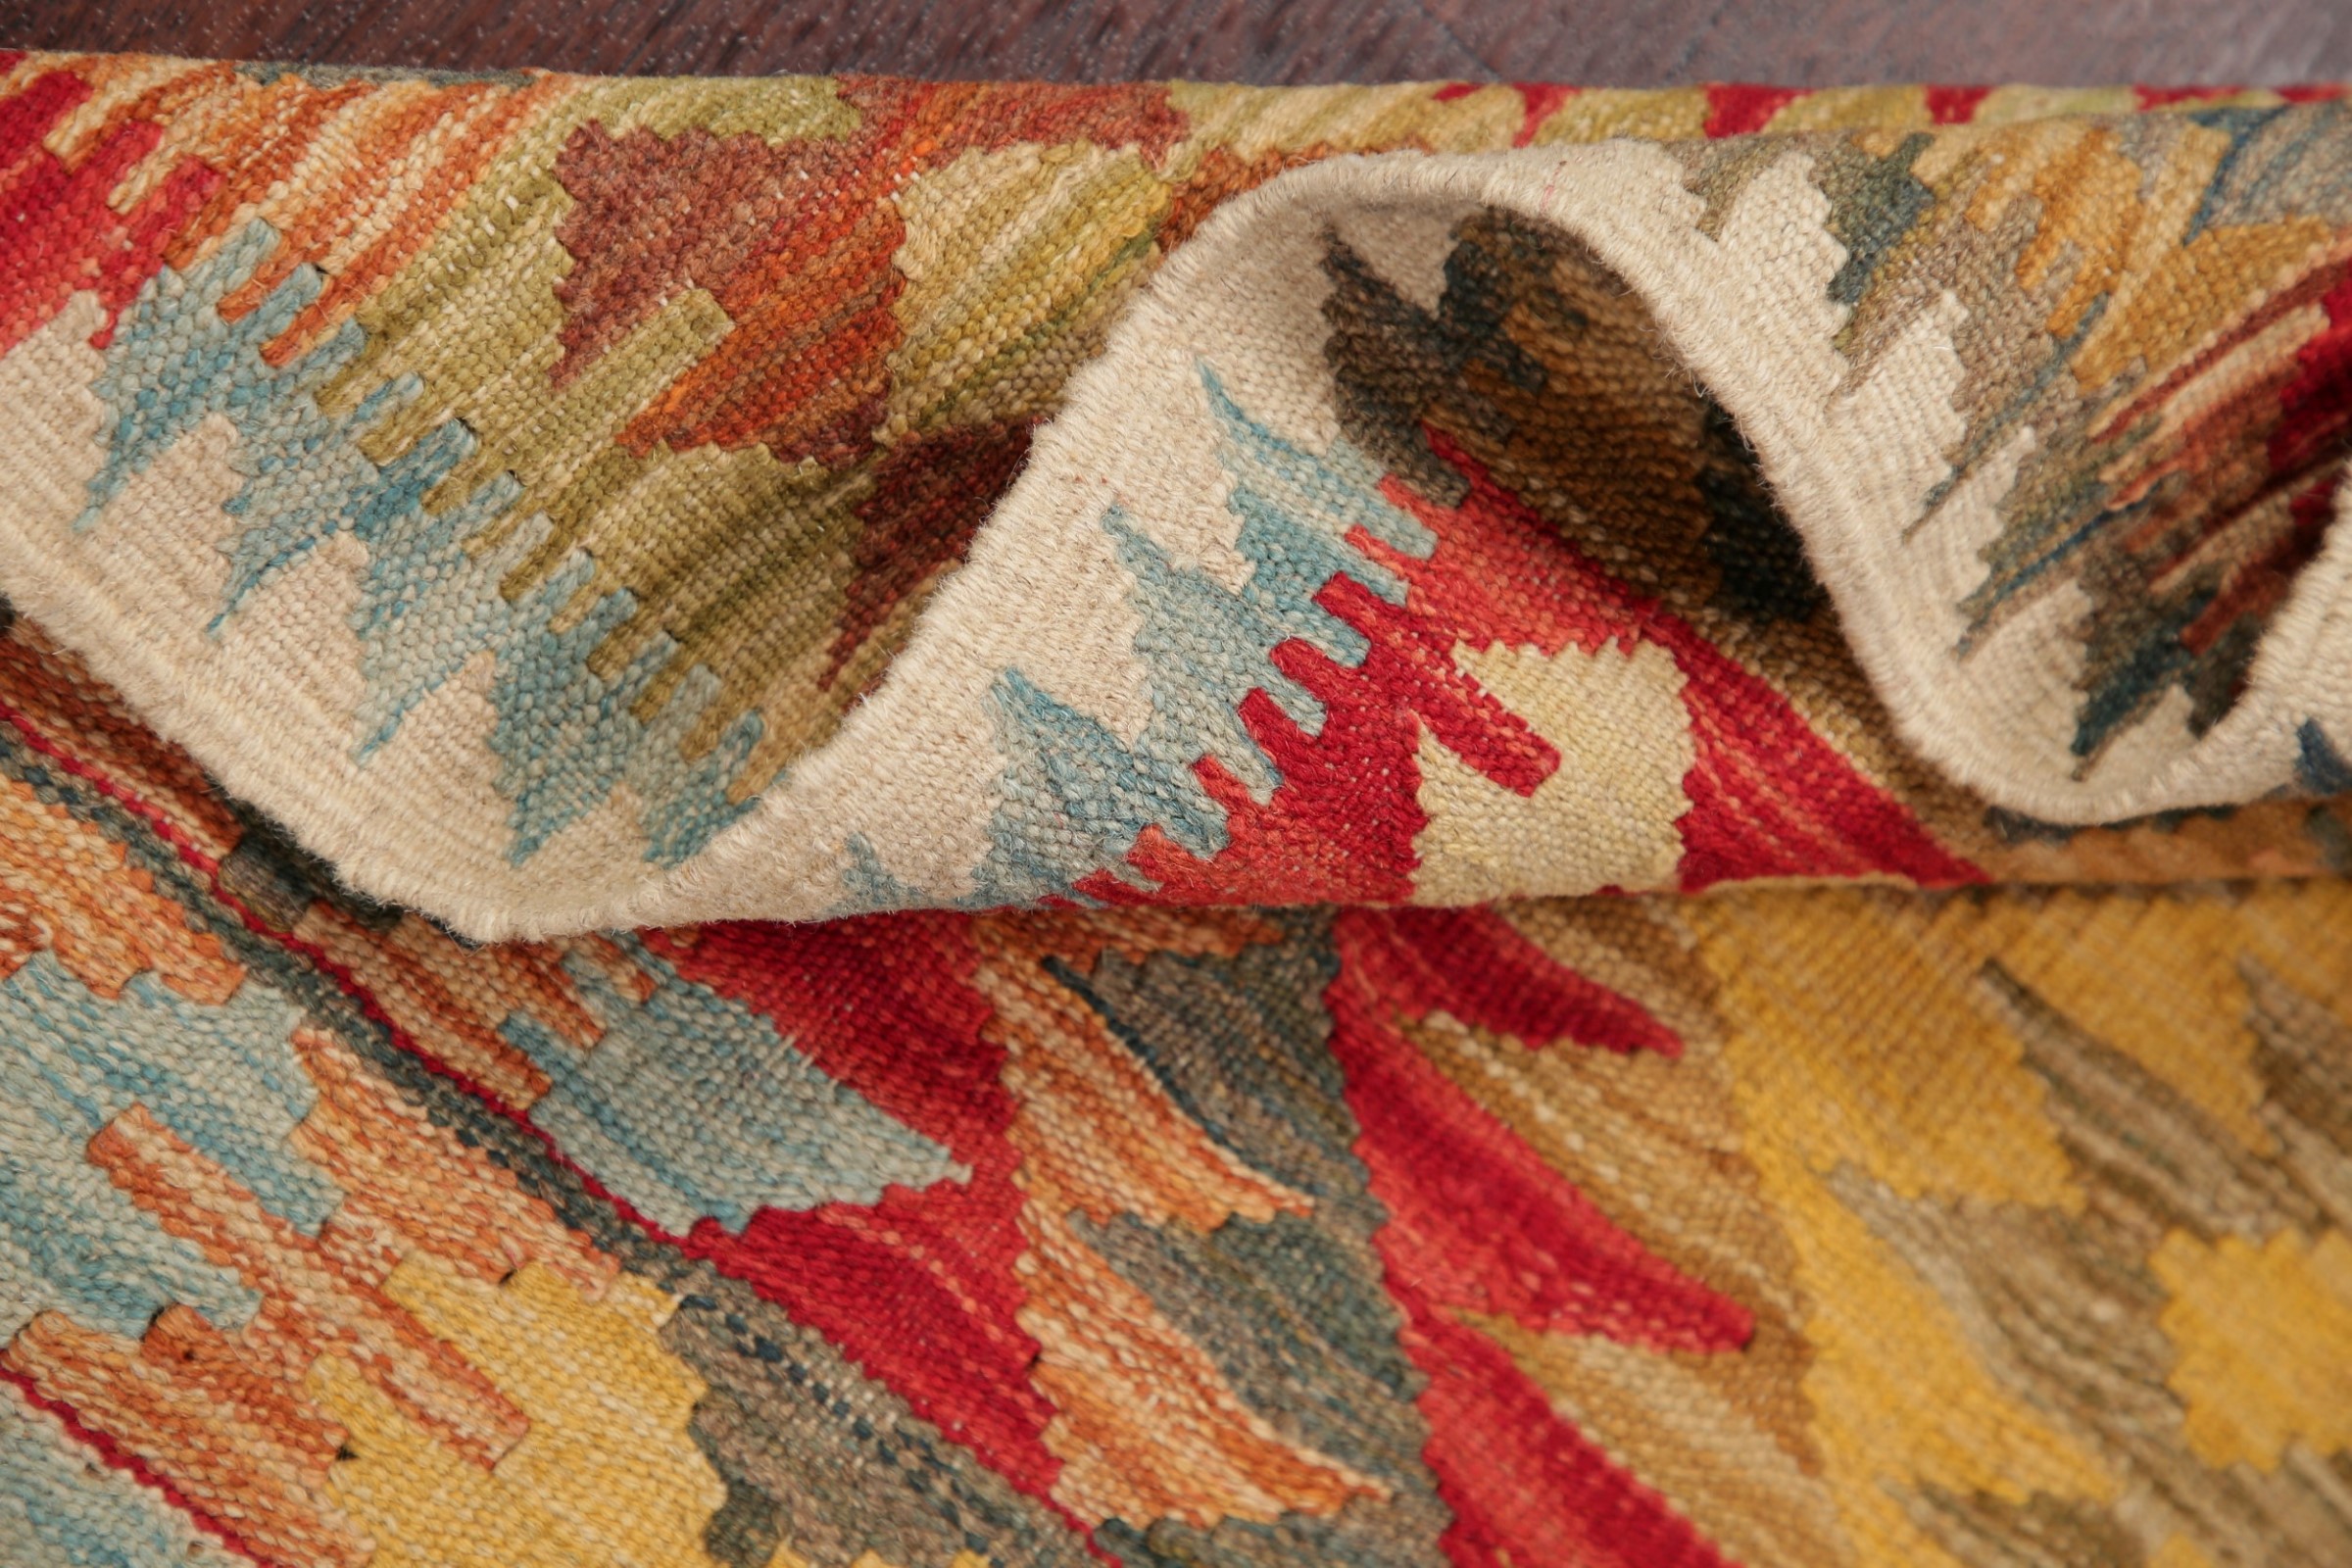 3'x3' Flat-Weave Turkish Kilim Rug Vintage Style Geometric Oriental